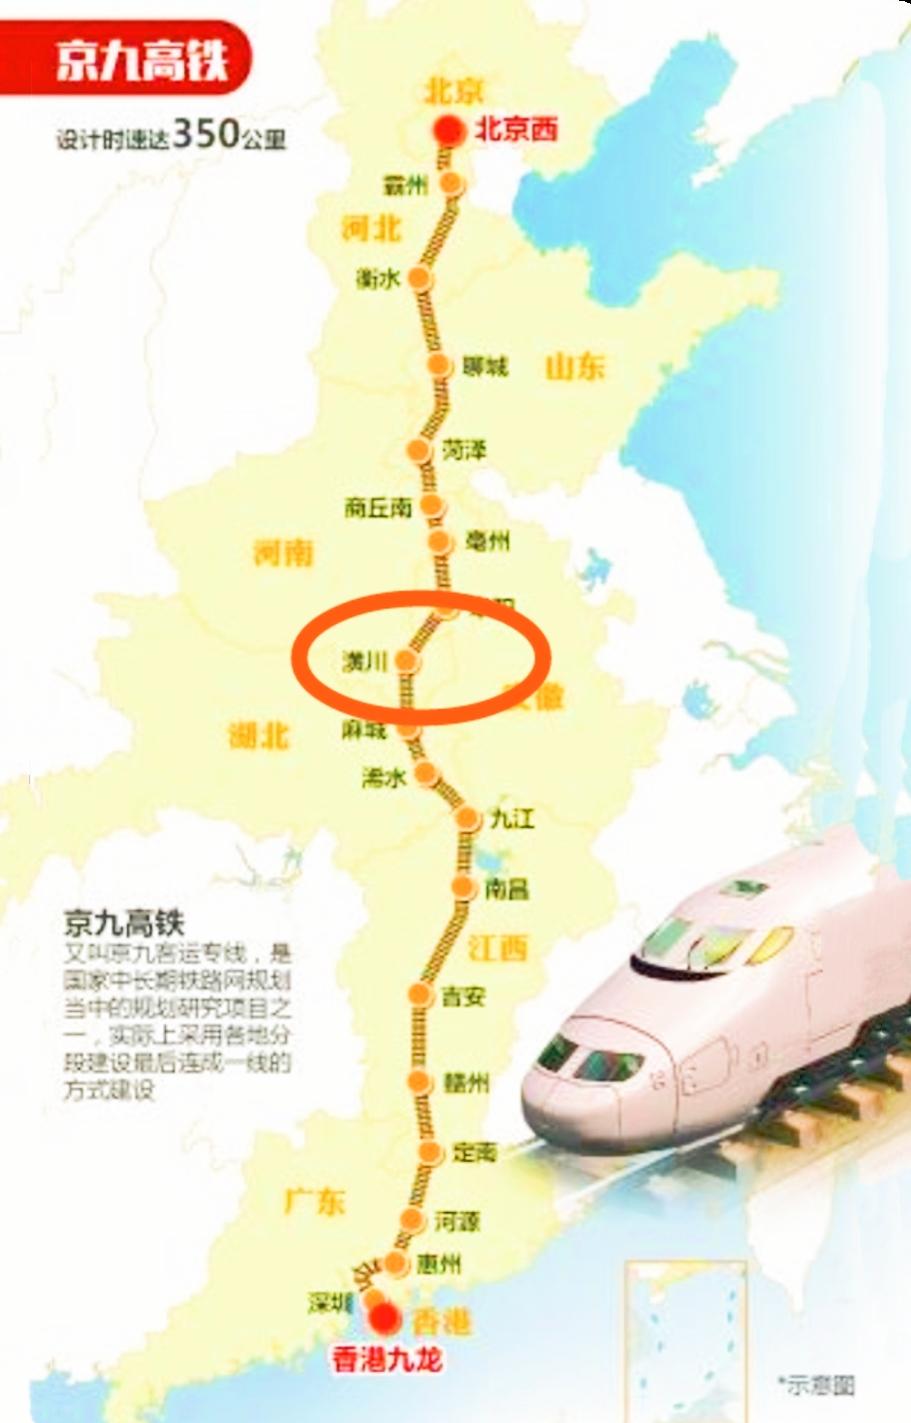 京九高铁、沿江高铁麻城接入站点18年将确实，力争19年开工建设